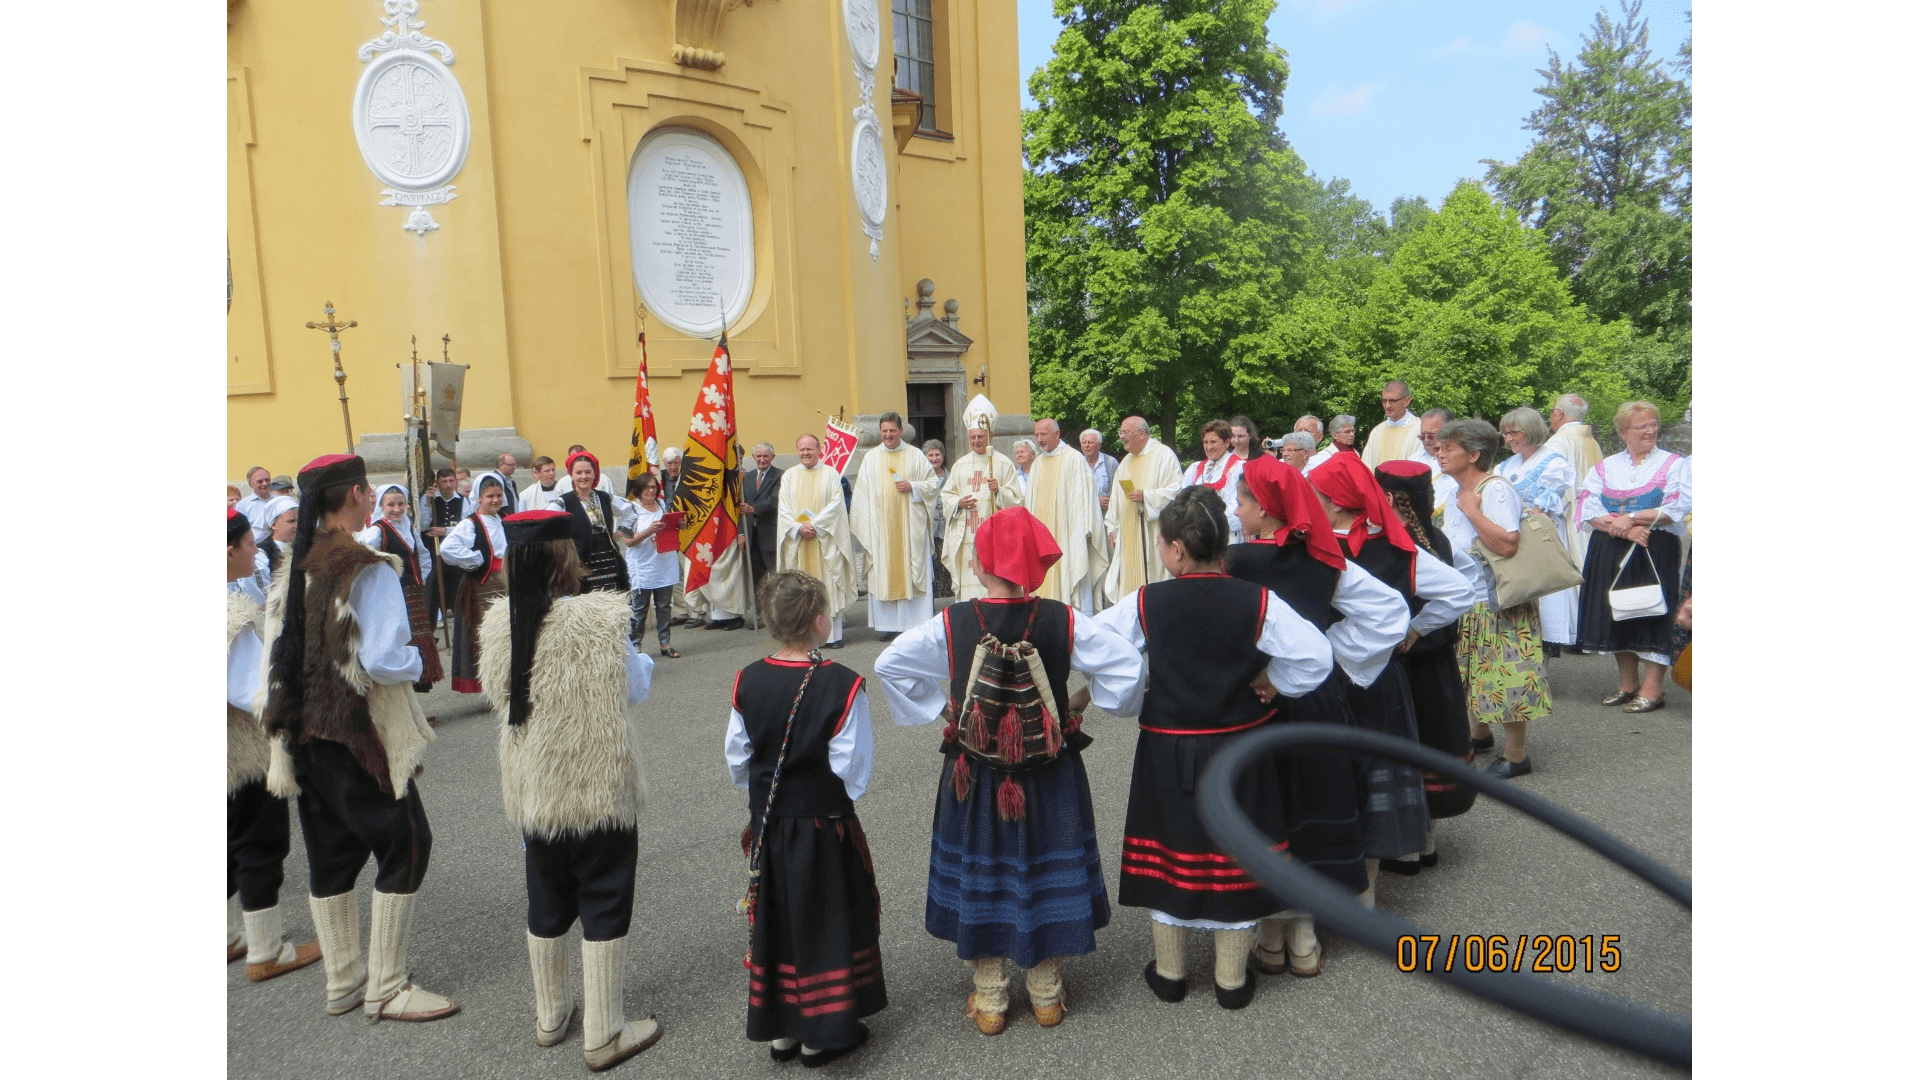 Tanzgruppe aus Serbien 2015 in  Ellwangen. Foto: Archiv Freundeskreis Filipowa